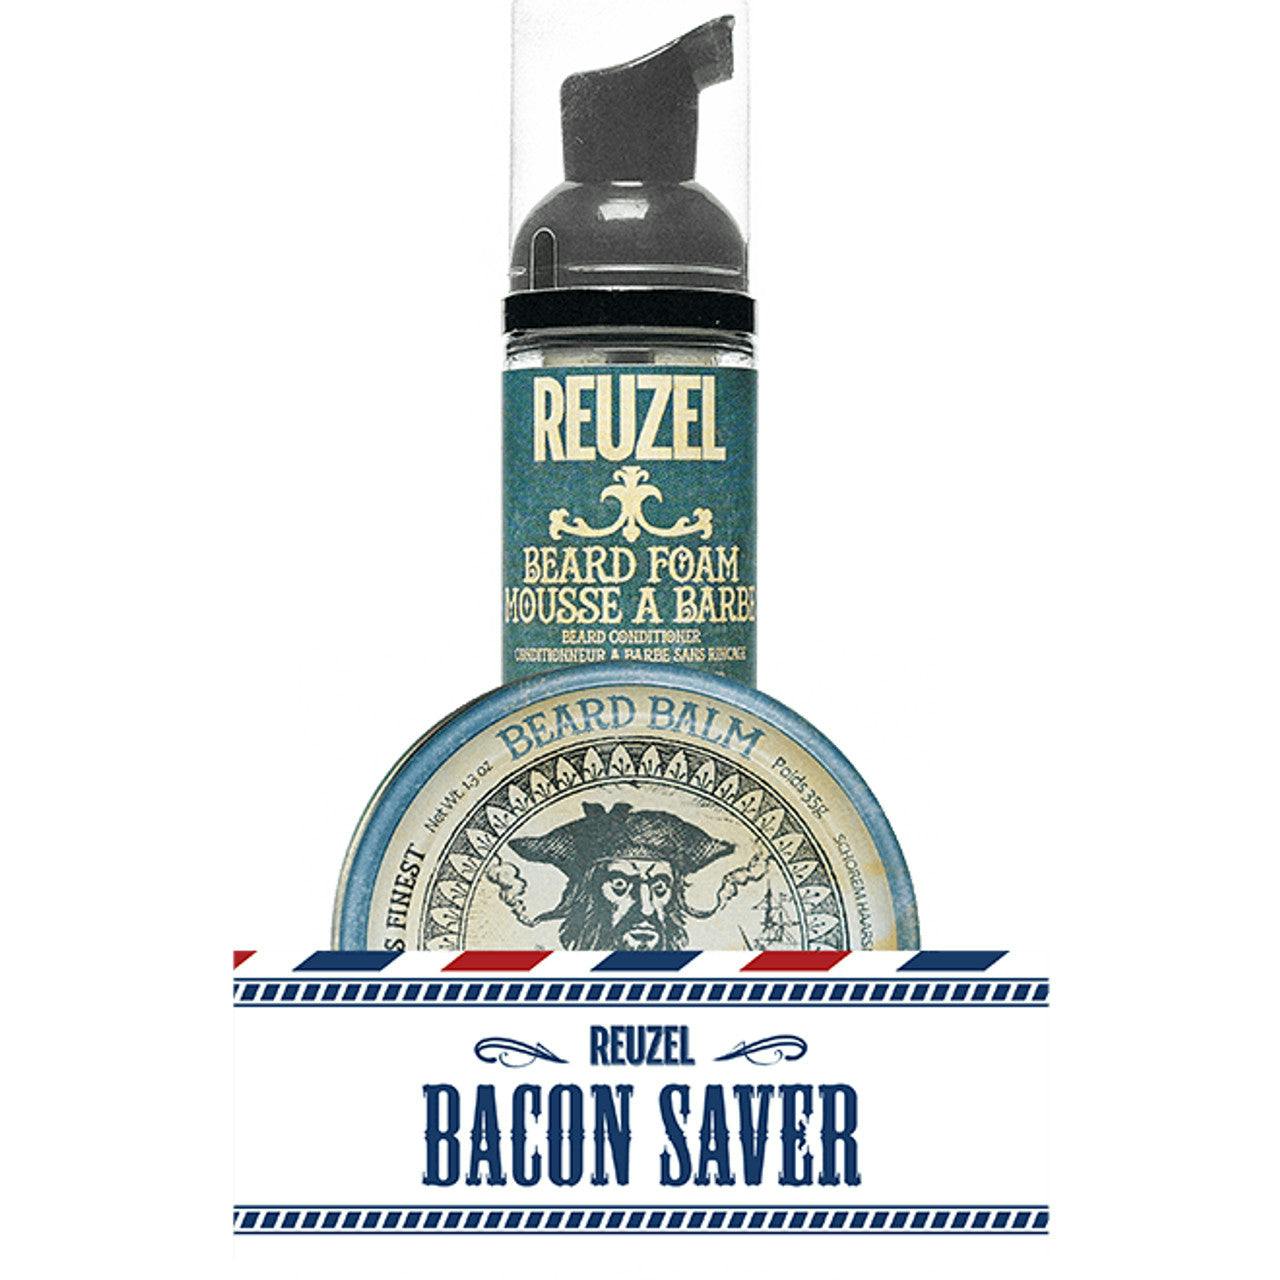 Reuzel Bacon Saver Pack